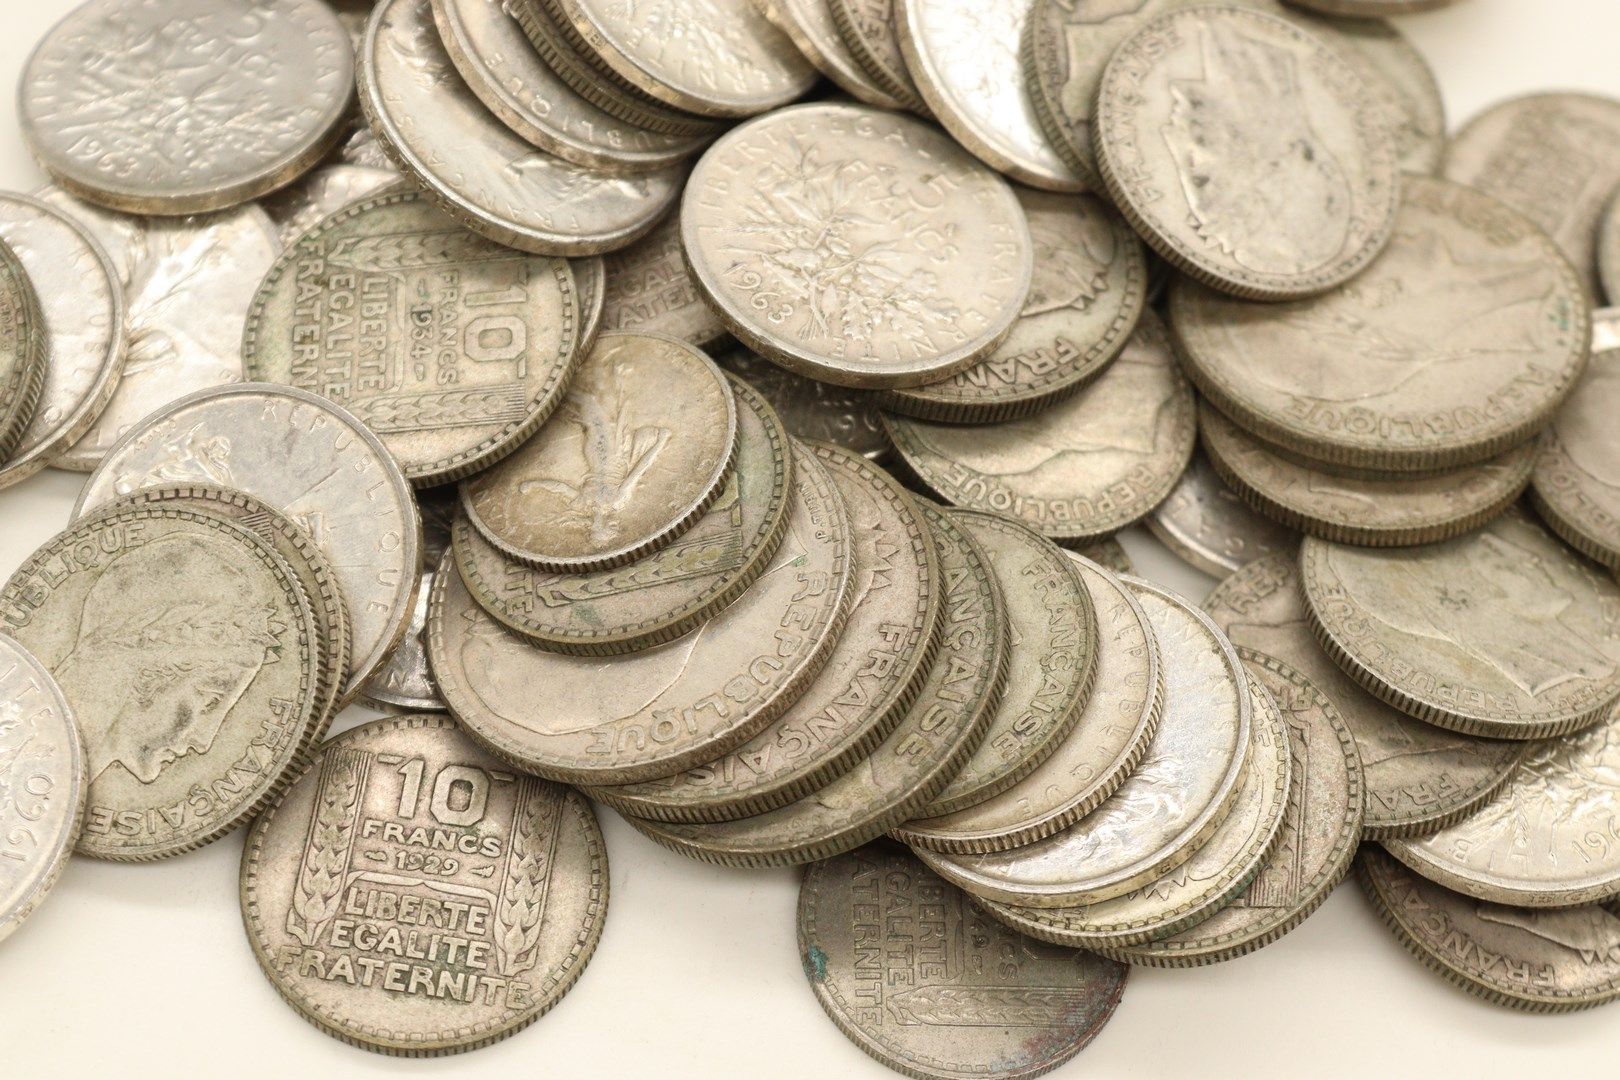 Null Lot von Silbermünzen im Wert von 5 Francs, 10 Francs und 20 Francs.

Gewich&hellip;